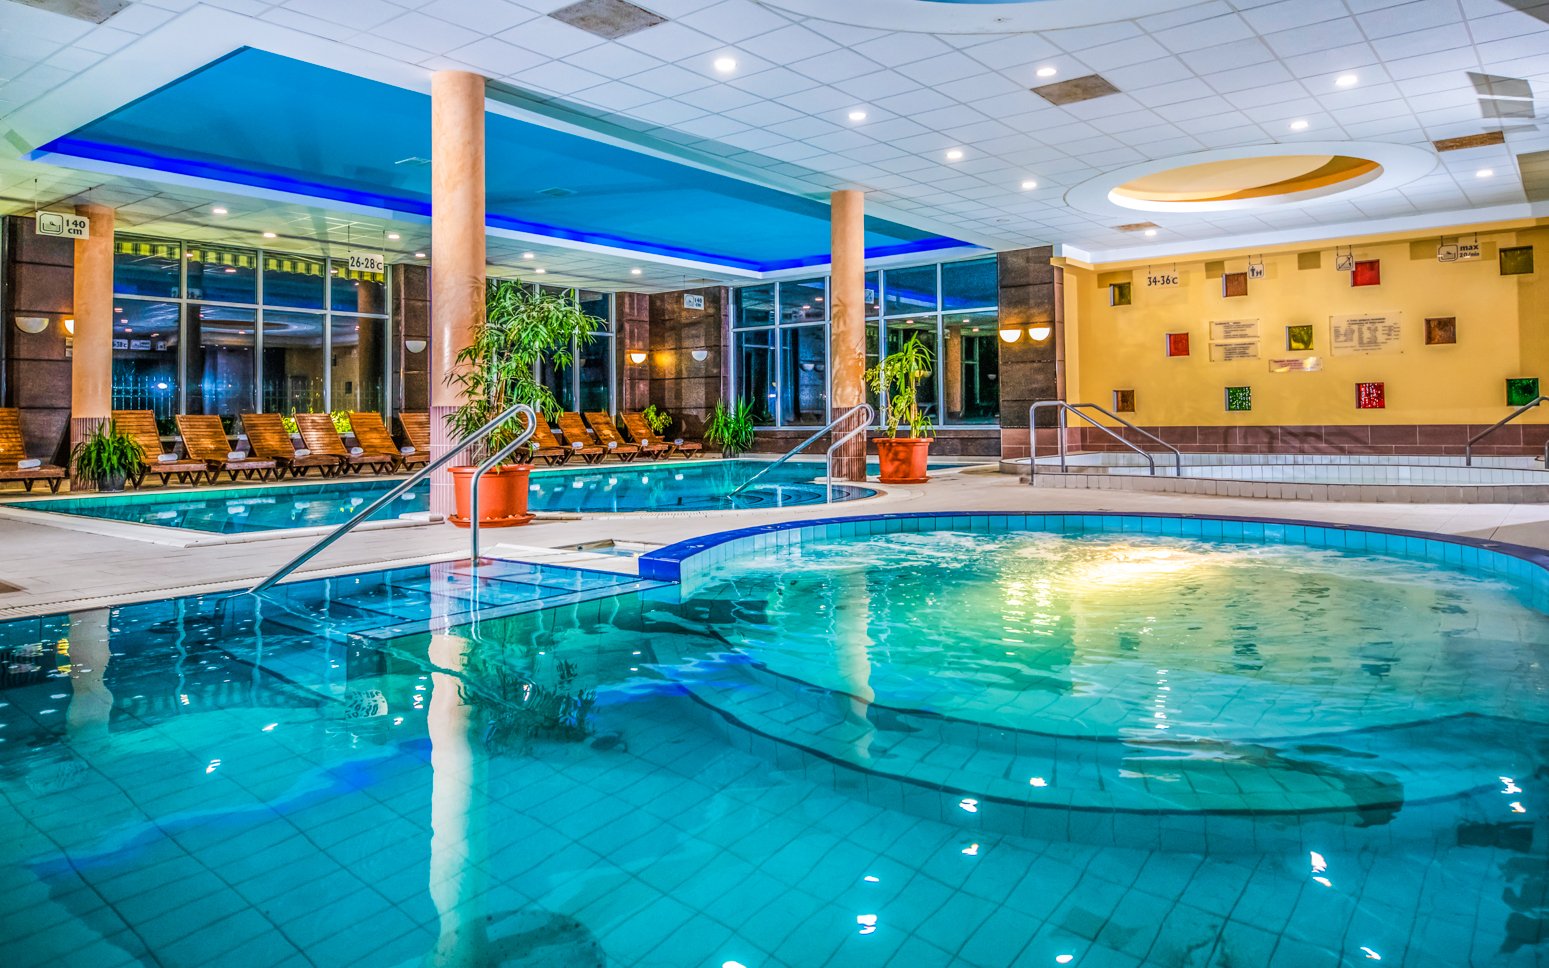 Maďarsko: Mezőkövesd v Balneo Hoteli Zsori Thermal & Wellness **** s polpenziou a termálnym wellness s bazénmi<br/>Balneo Hotel Zsori Thermal & Wellness ****, Fülemüle út 2, Mezőkövesd 3400, info@balneohotel.hu